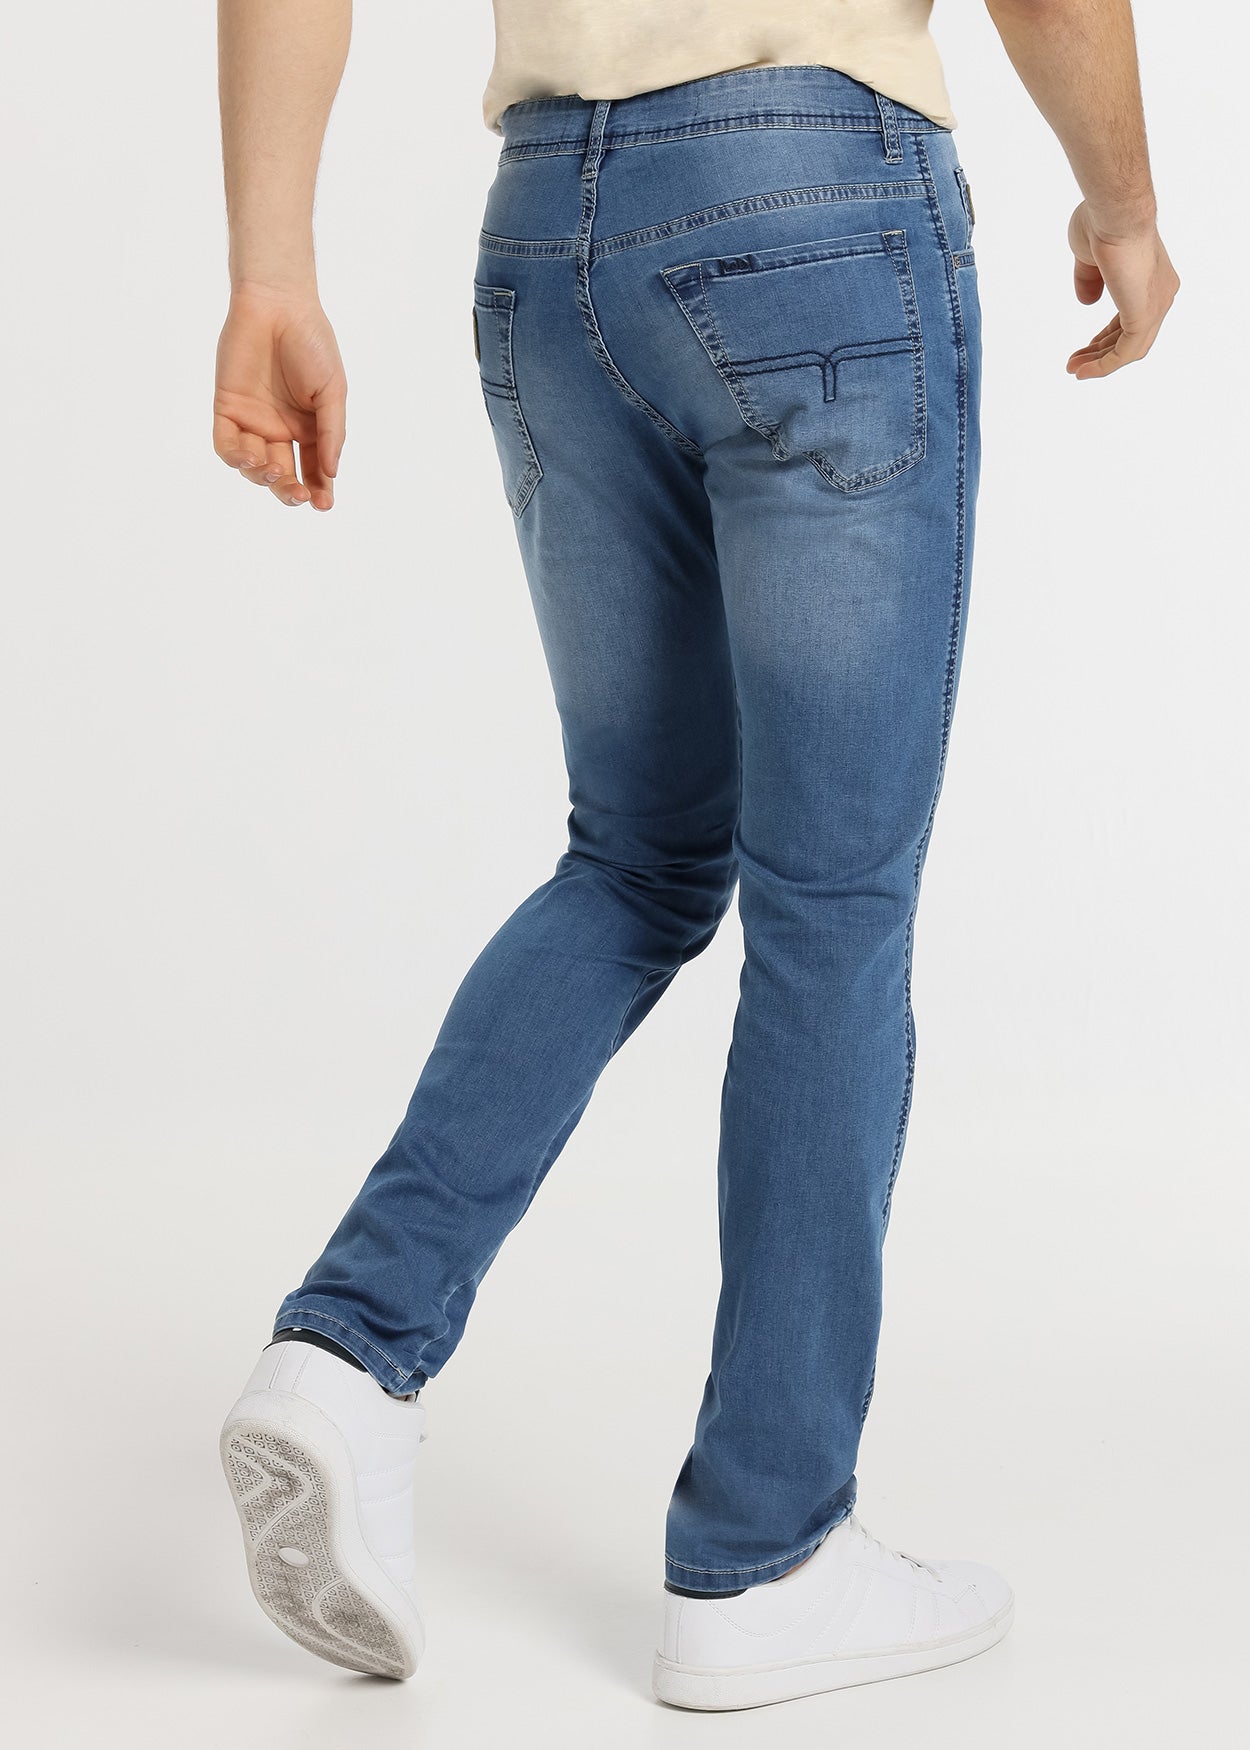 Lois Marvin-Really Jeans Regular Tiro Medio 8 Onzas Light Blue 926